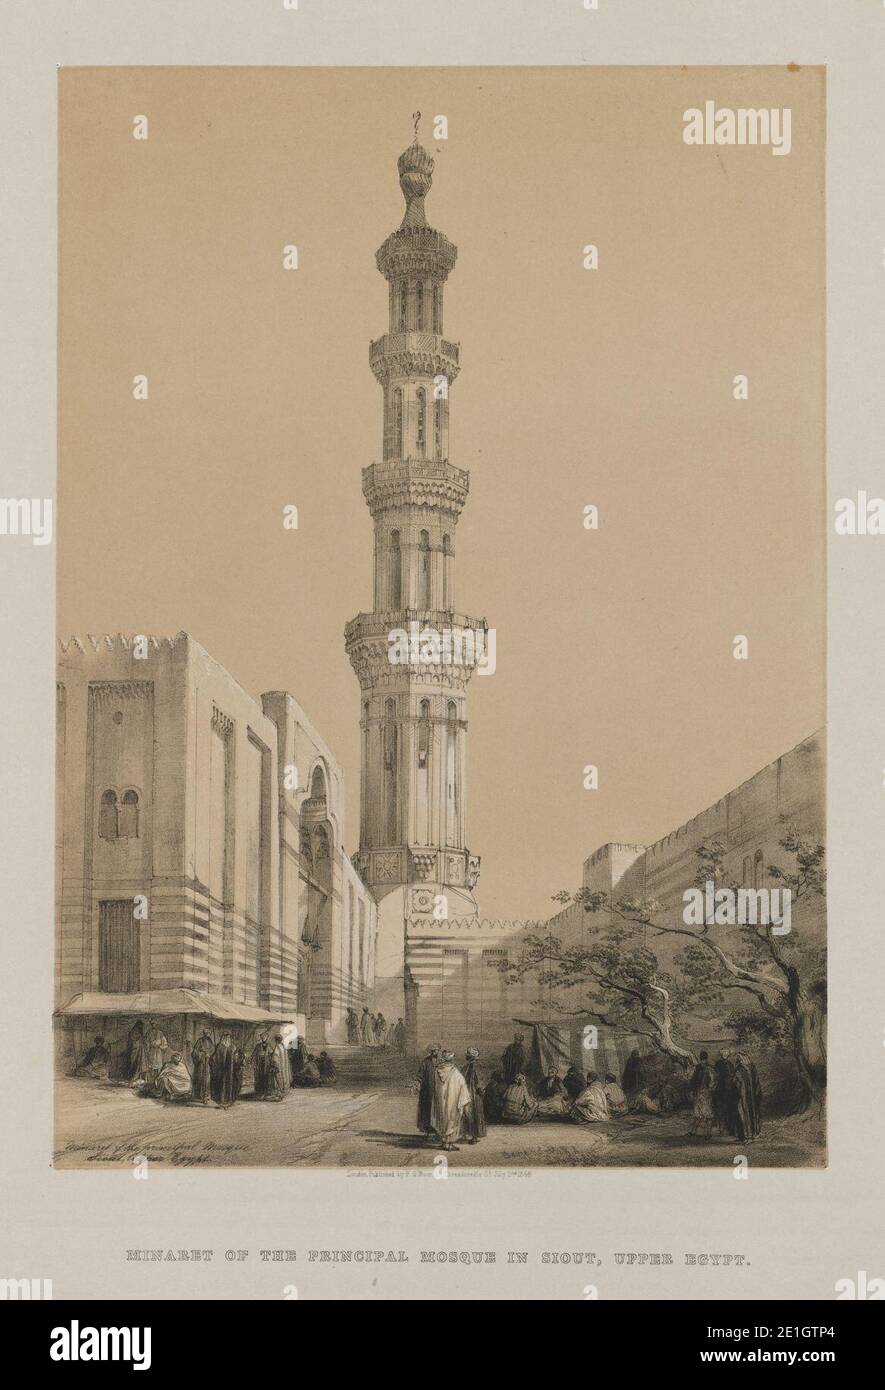 Louis Haghe (britannique, 1806-1885), F. G. Moon, 20 Threadneedle Street, Londres, David Roberts (britannique, 1796-1864) - Égypte et Nubia, Volume III, Minaret de la mosquée principale Siout, haute-Égypte Banque D'Images